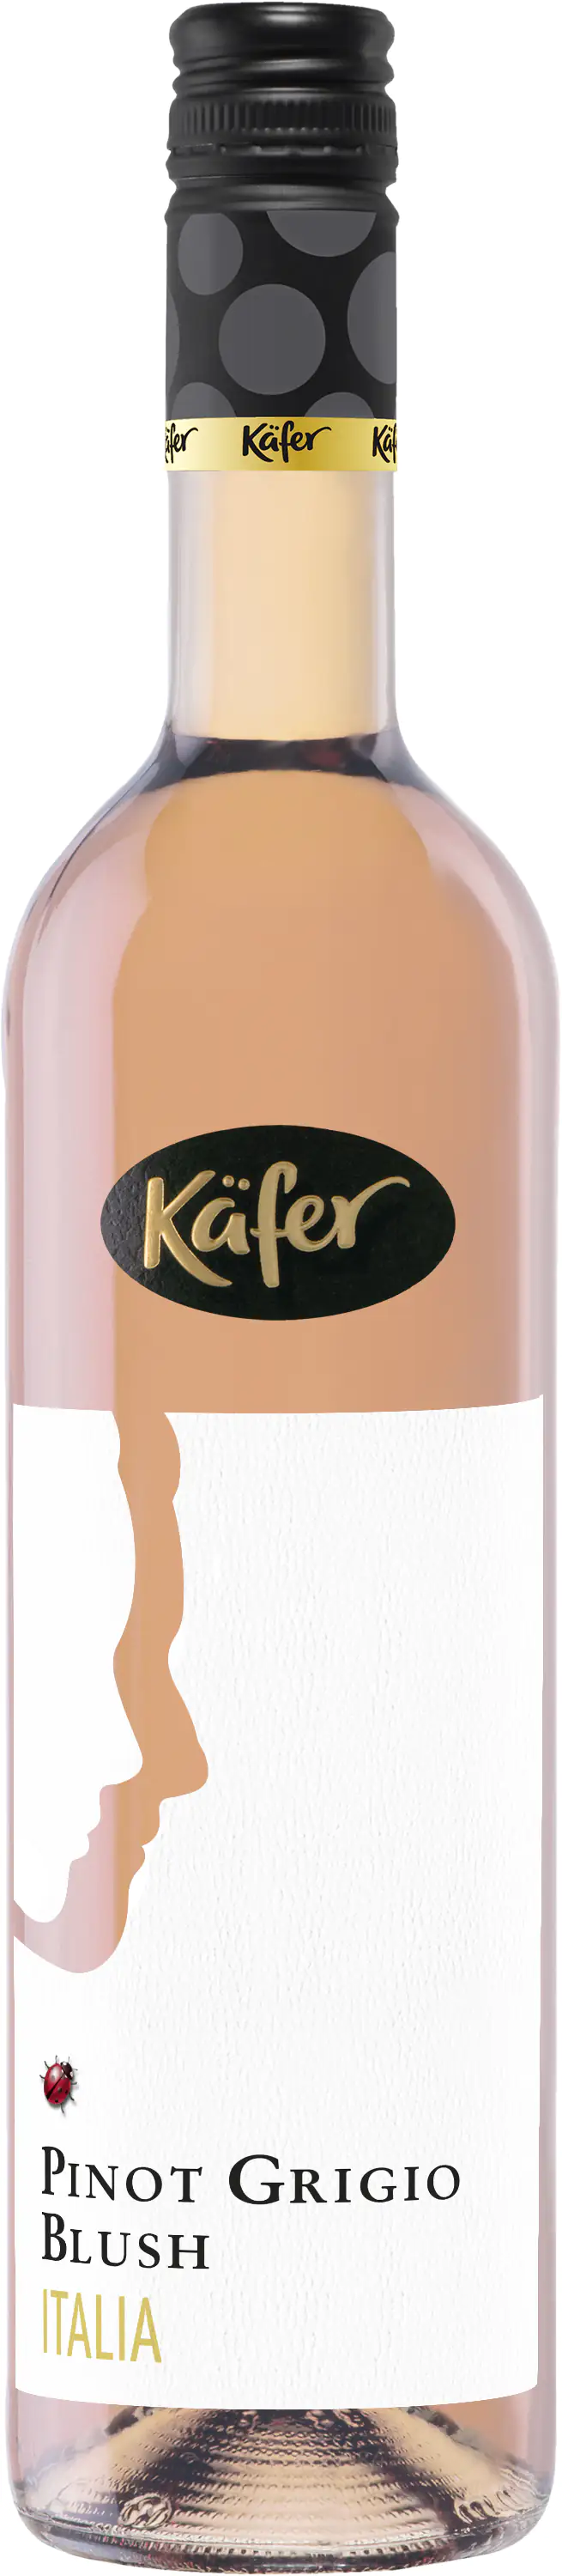 Käfer Rosé Pinot Grigio Blush 0,75 L trocken x Baumarkt 1 Globus kaufen Italien 